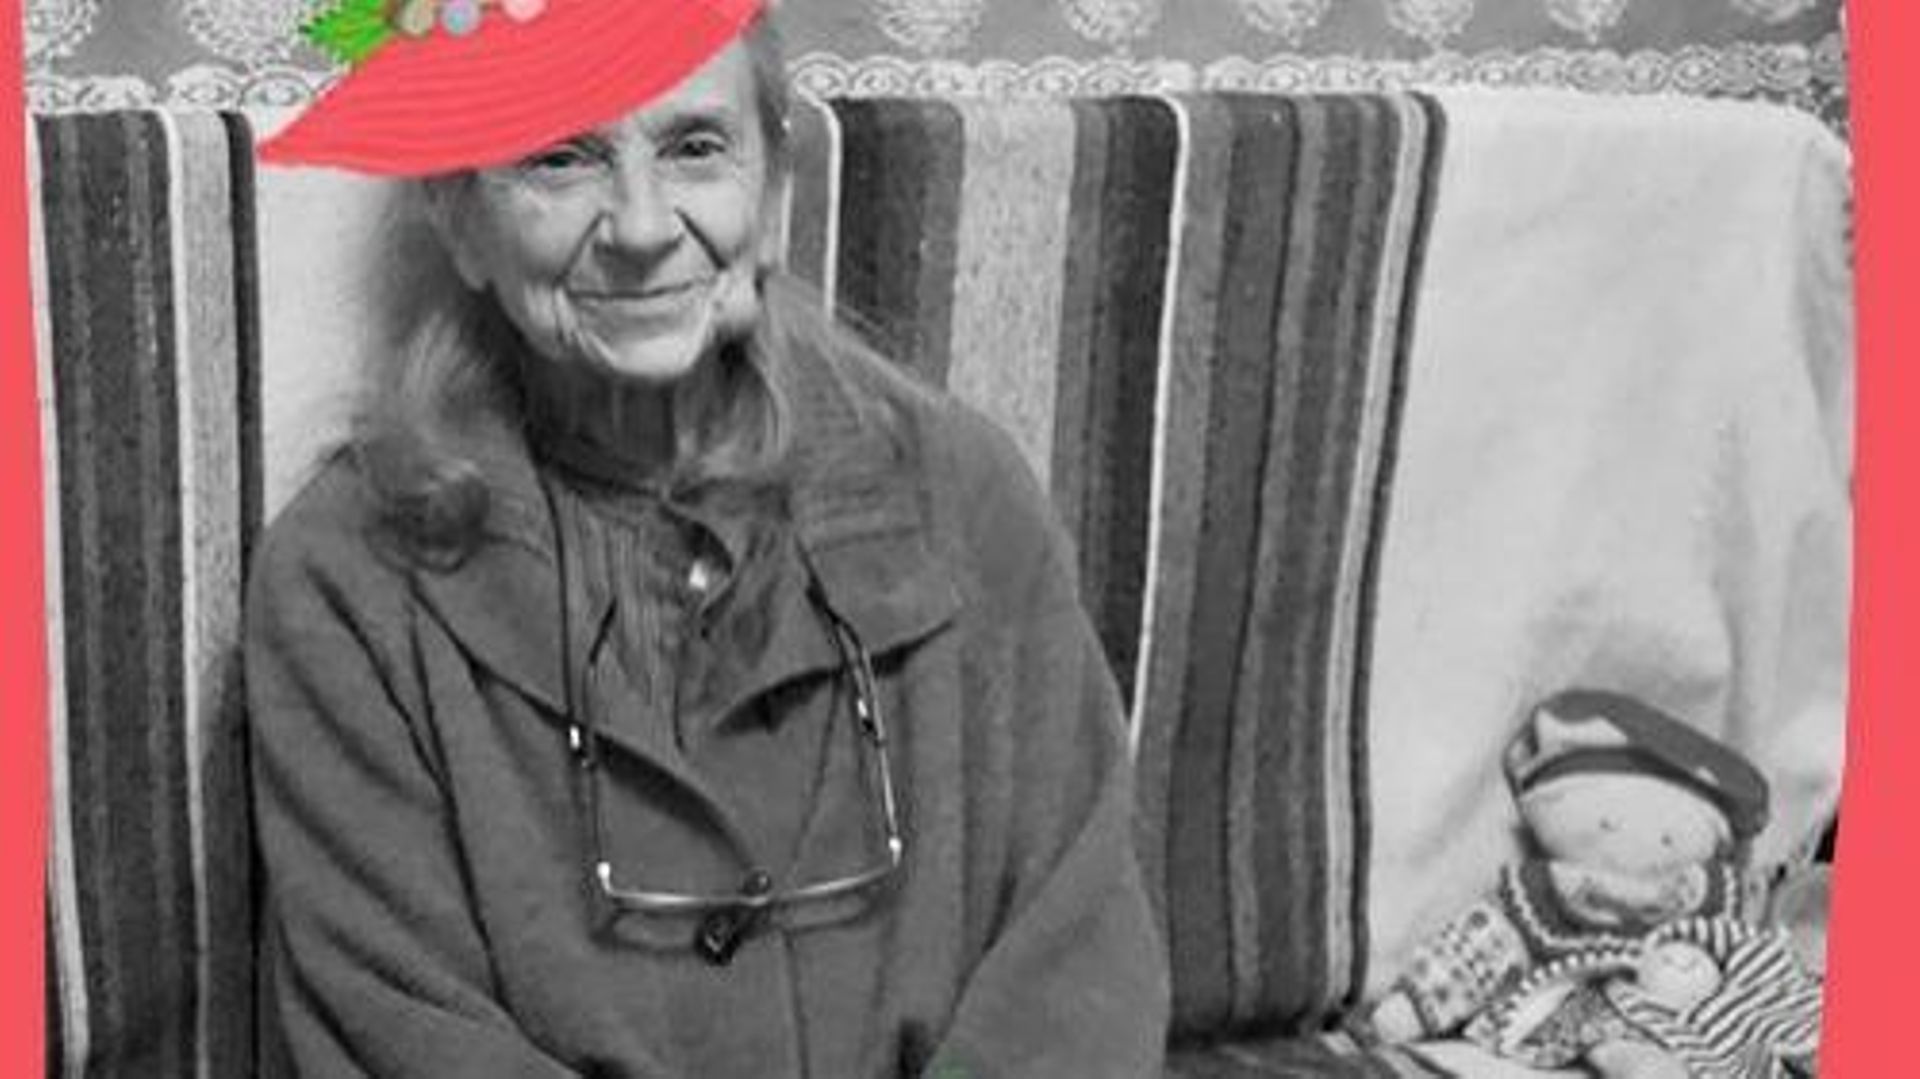 Podcast : « Mamie dans les orties », et si on écoutait nos grands-mères raconter leurs histoires ?